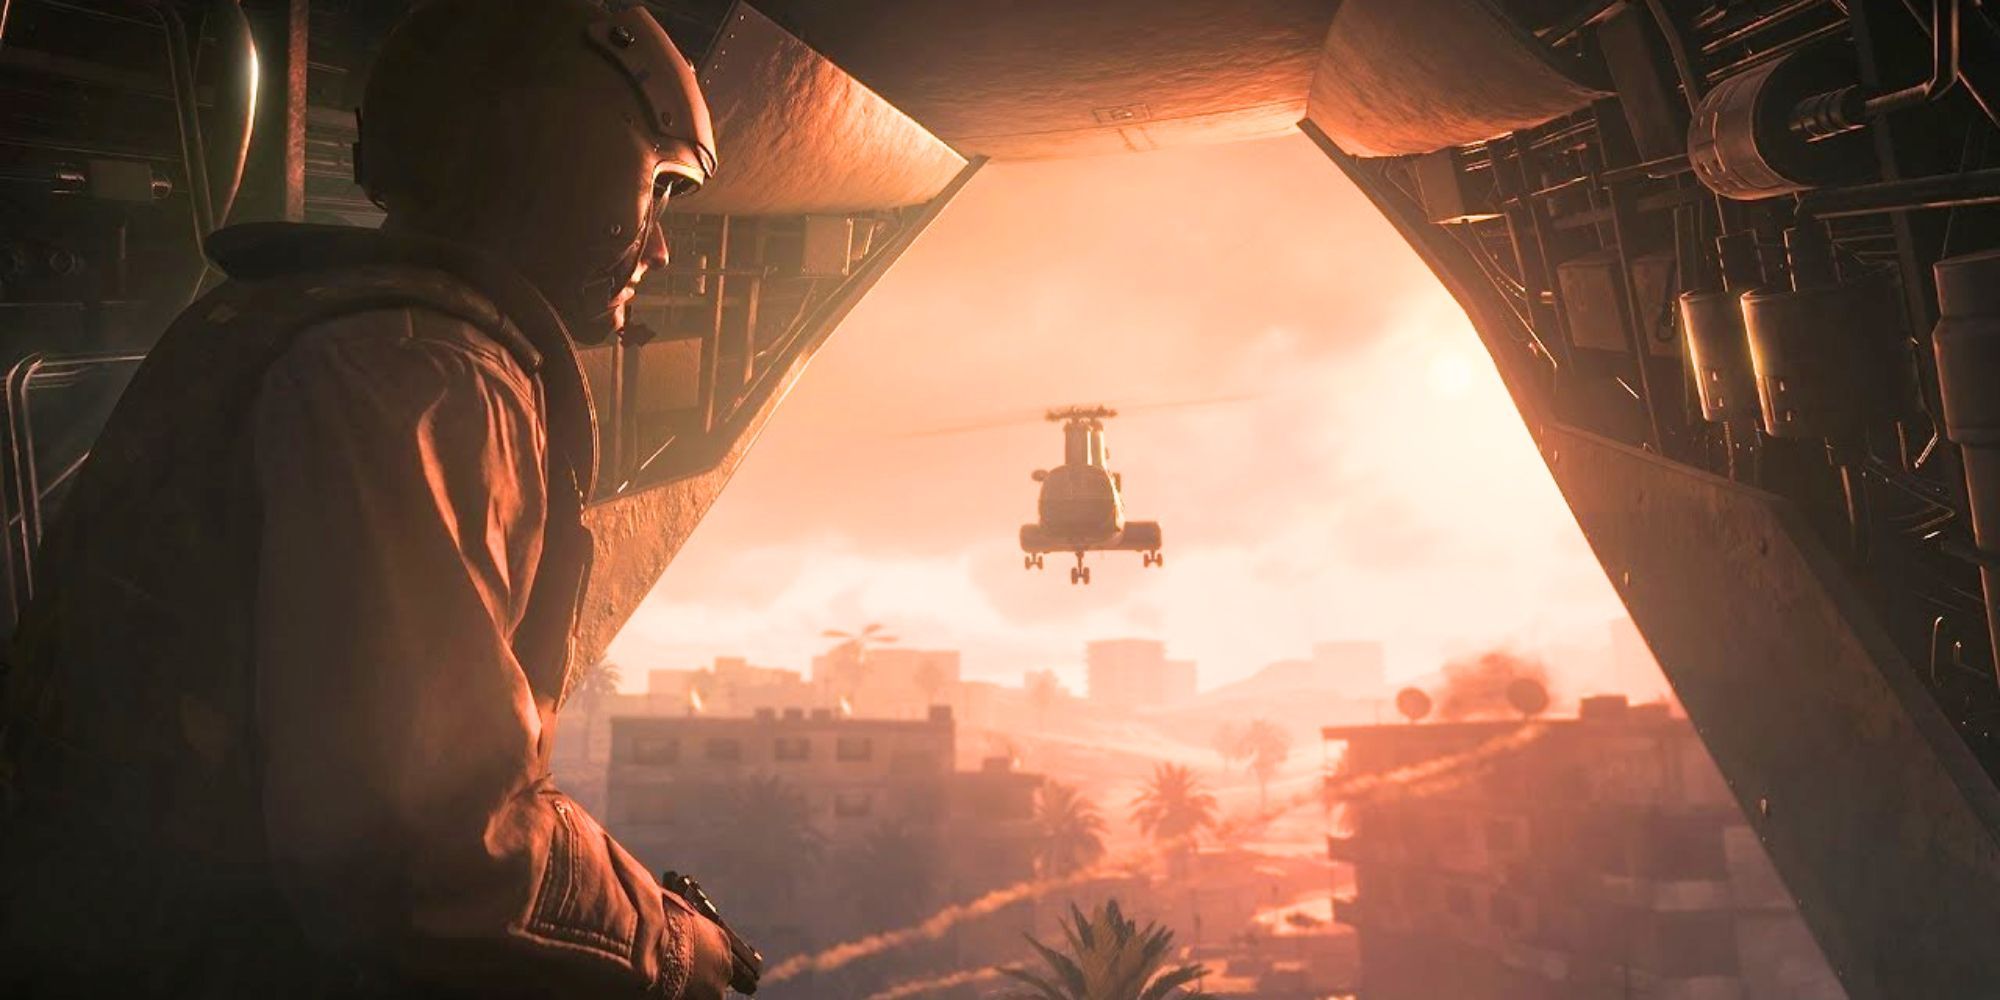 Ein Soldat blickt von der Hintertür eines Flugzeugs nach draußen.  Ein weiterer Hubschrauber fliegt vor dem Hintergrund eines roten Himmels